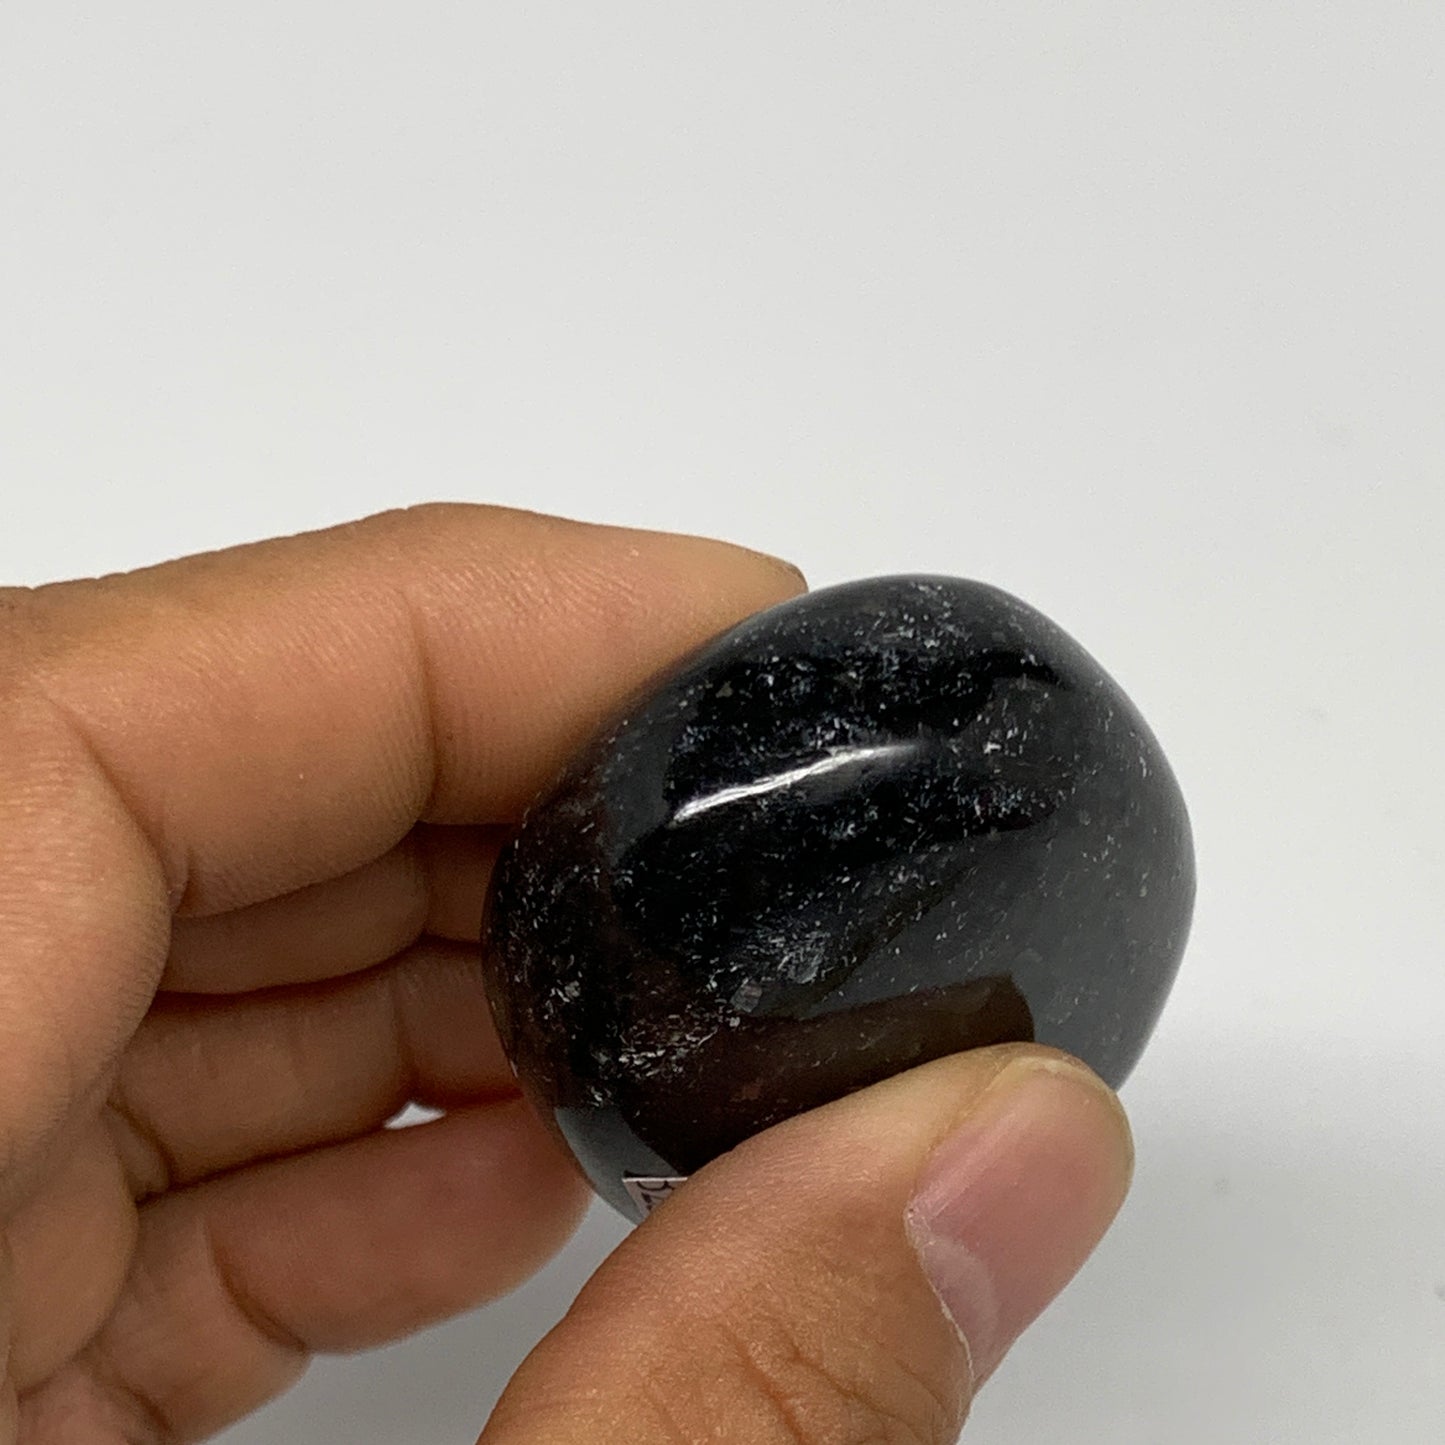 74.6g,2"x1.4"x0.8", Labradorite Palm-stone Tumbled Reiki @Madagascar,B25078